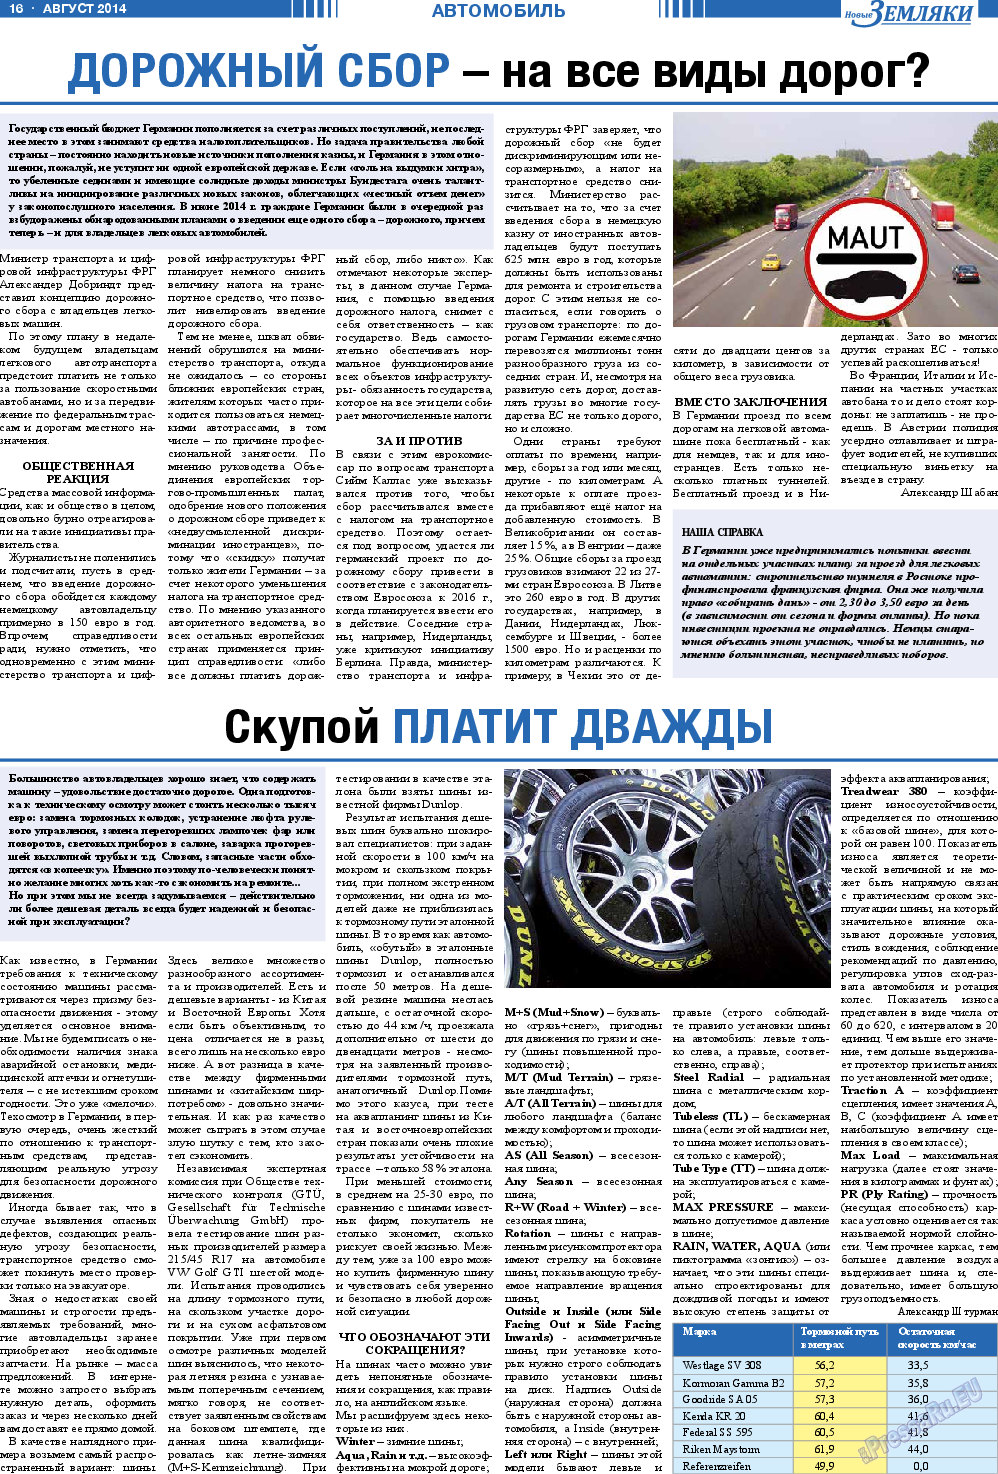 Новые Земляки, газета. 2014 №8 стр.16